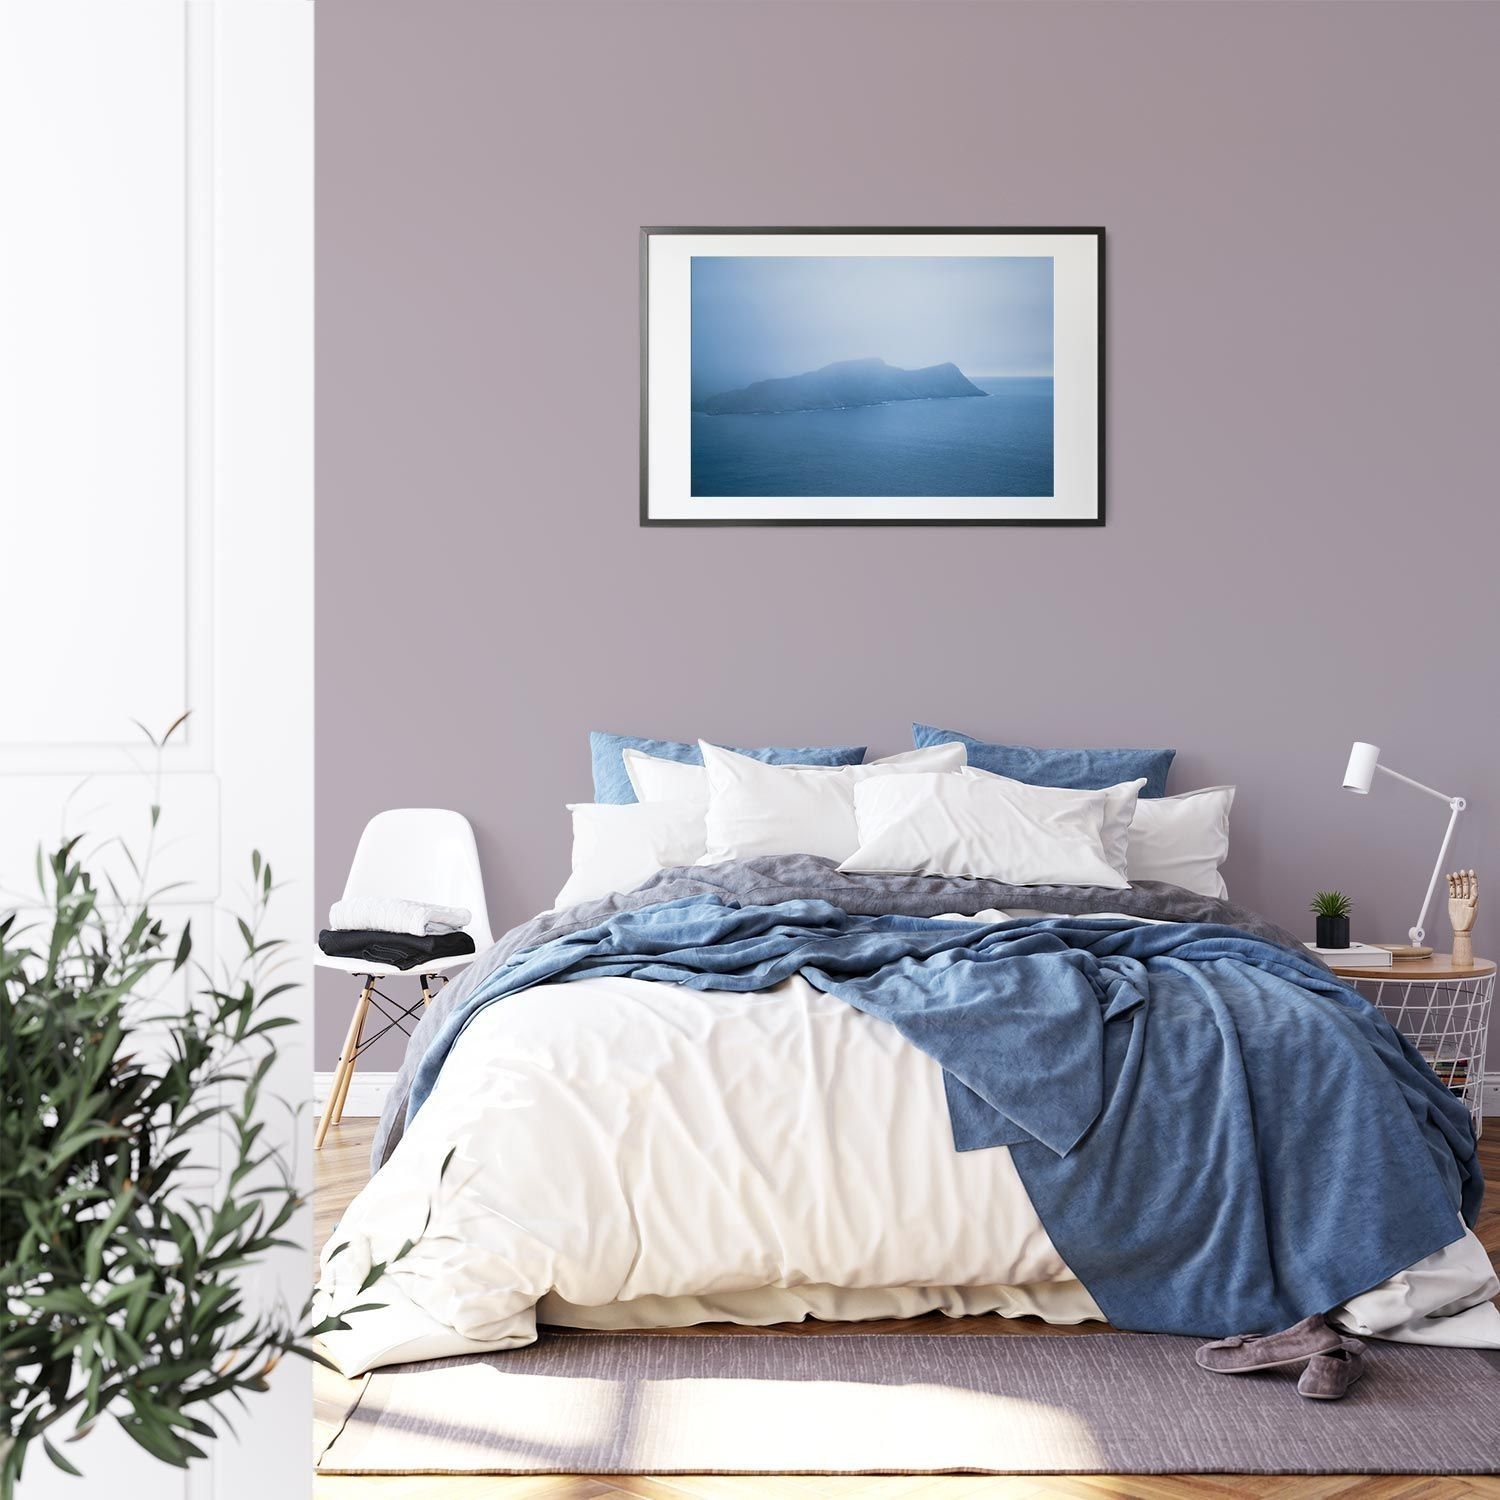 Lila und violette nachhaltige Wandfarbe von Mynt im Schlafzimmer mit weißem Bett und blauen Decken.